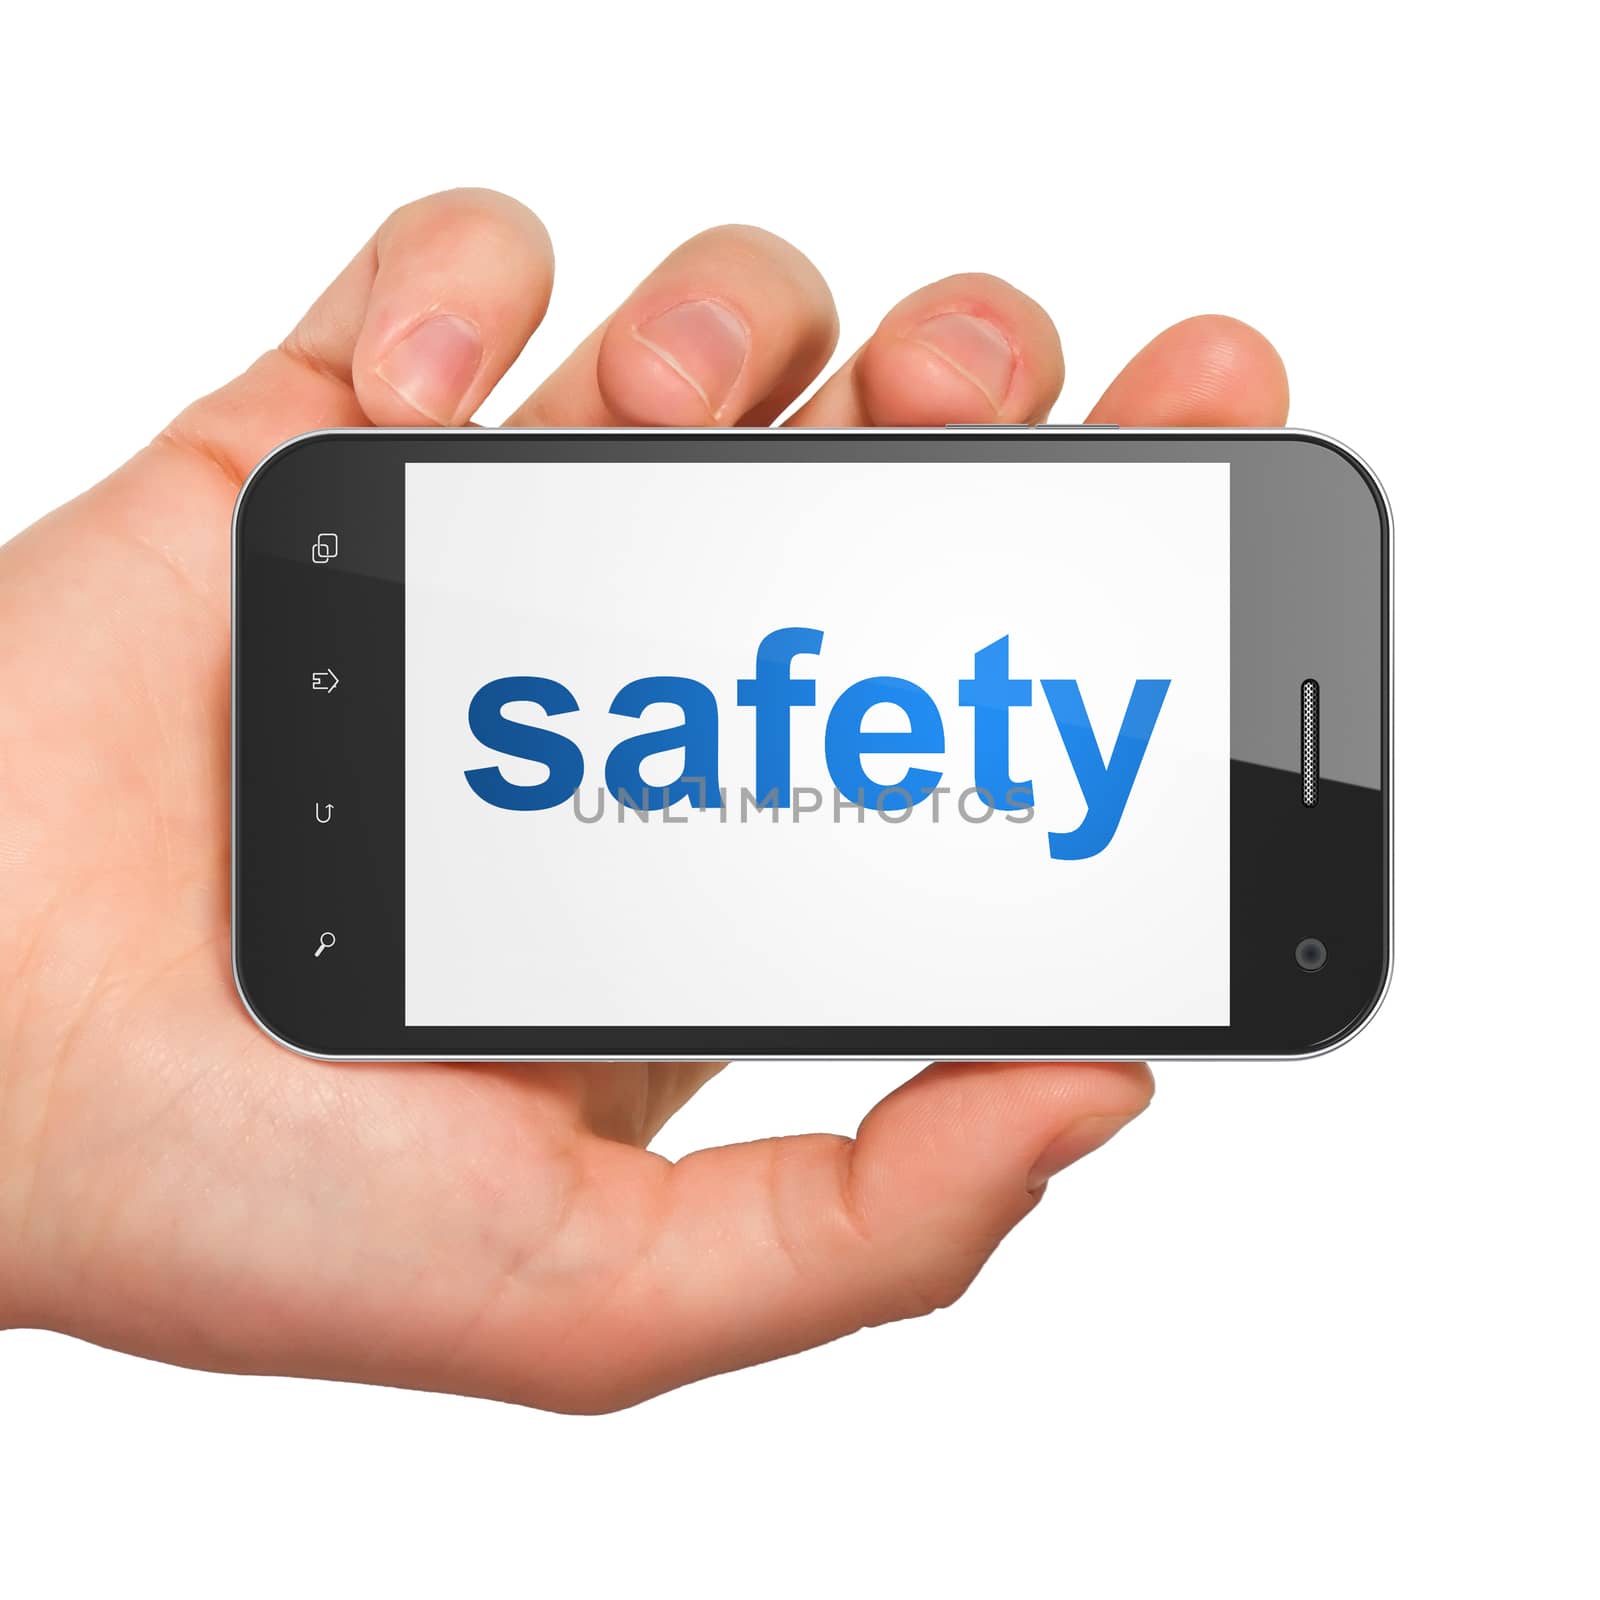 Safety concept: Safety on smartphone by maxkabakov